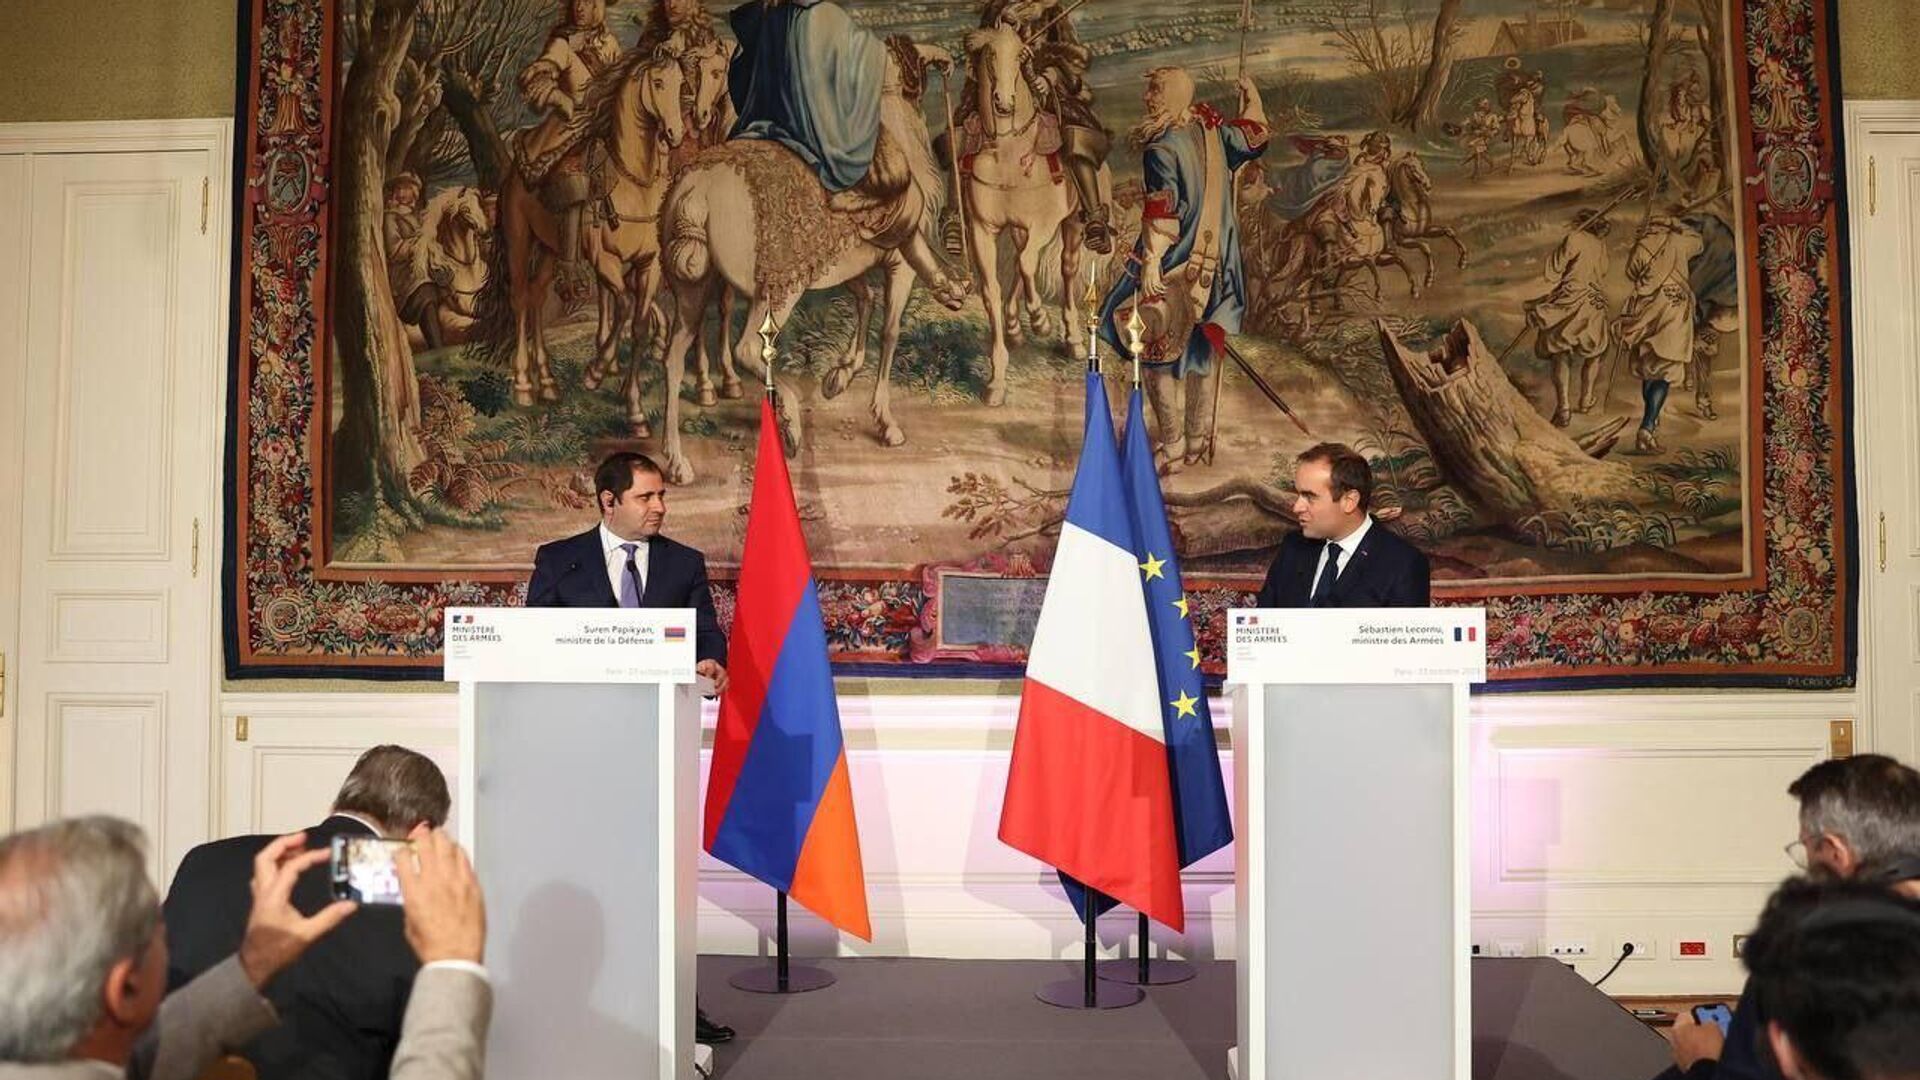 Papikyan: Fransa ile askeri alanda işbirliğinin herhangi bir ülkeye karşı değil